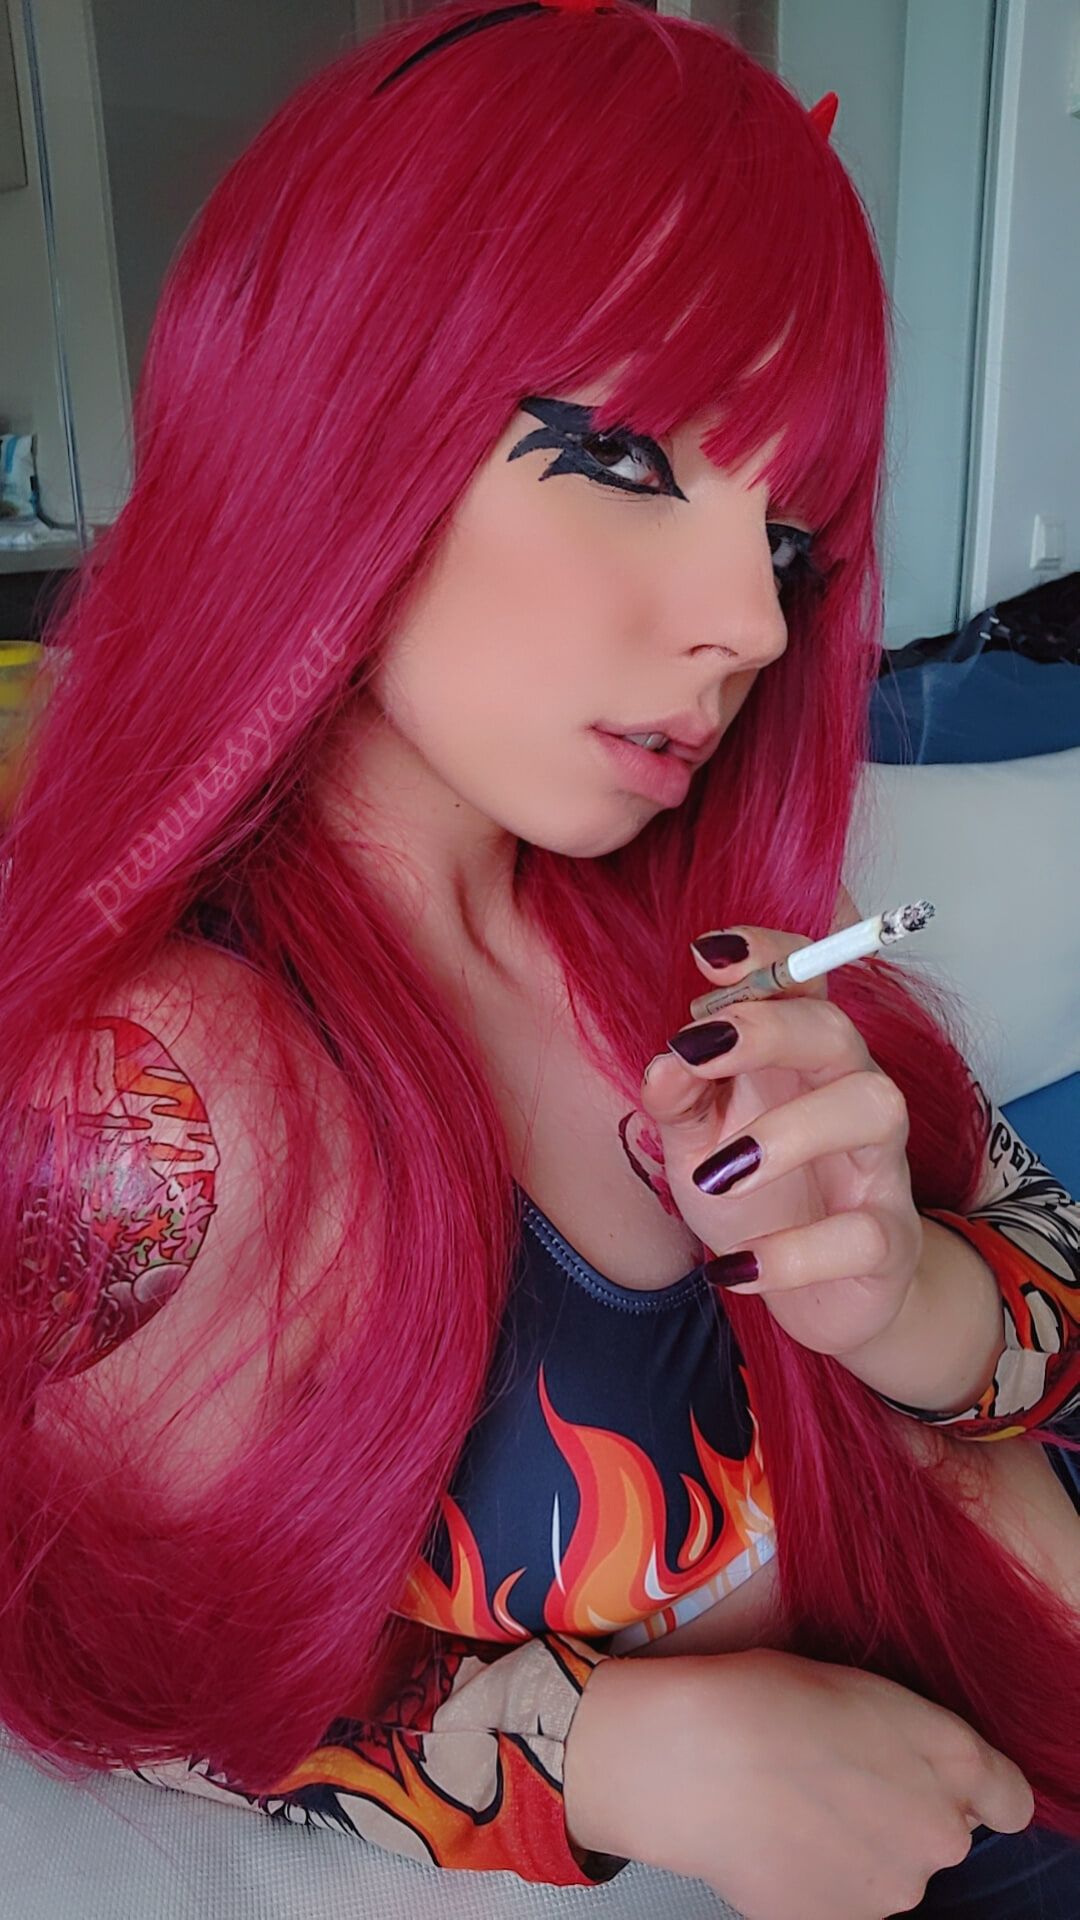 Goth Metal Girl Smoking #7